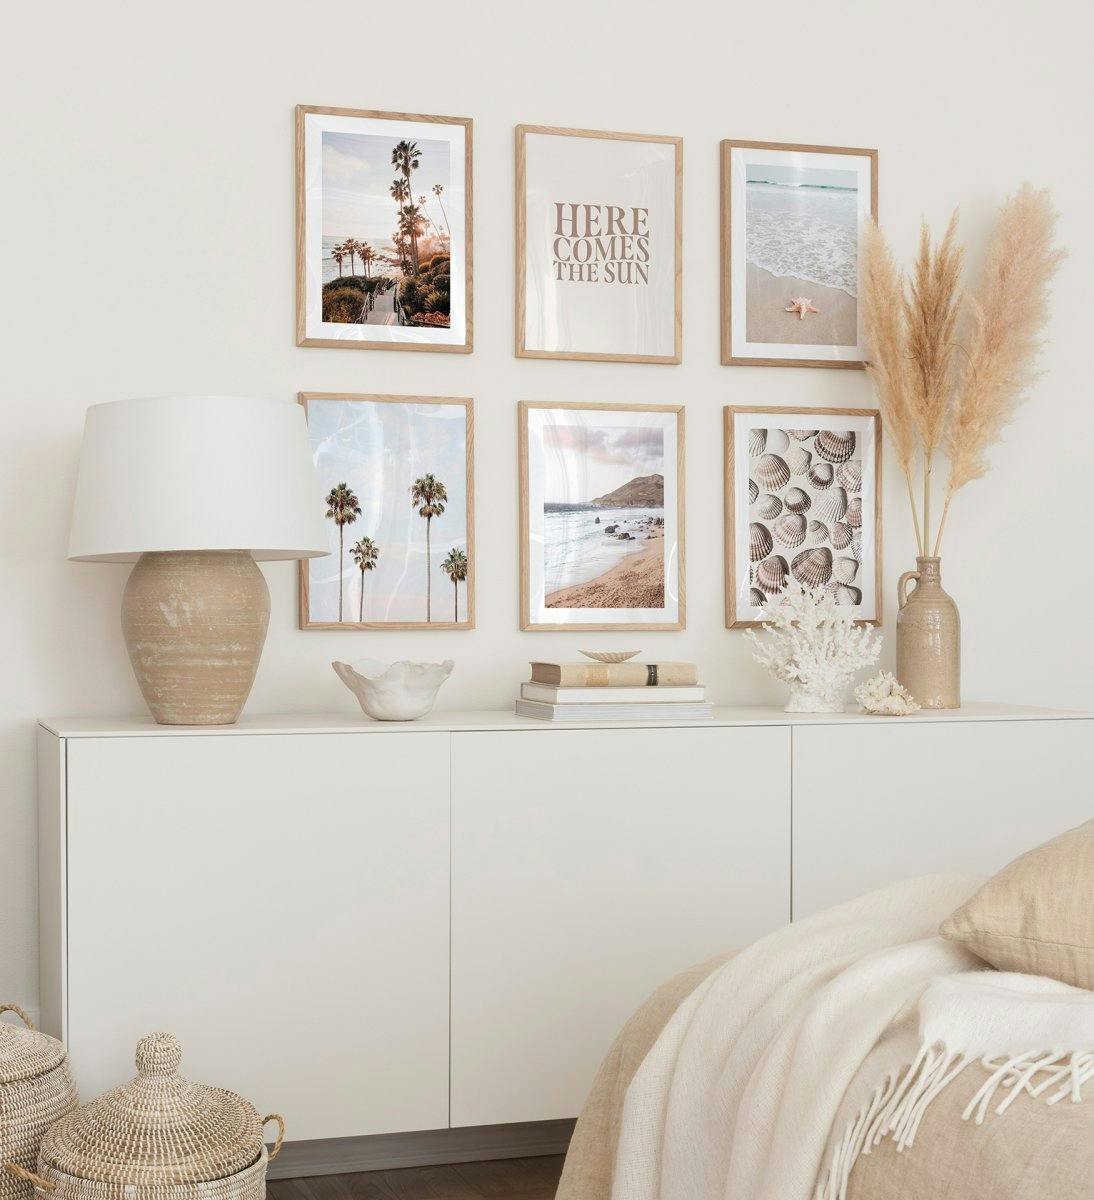 Galerie foto pentru dormitor cu postere tropicale pe tema plajei în rame din lemn de stejar. 